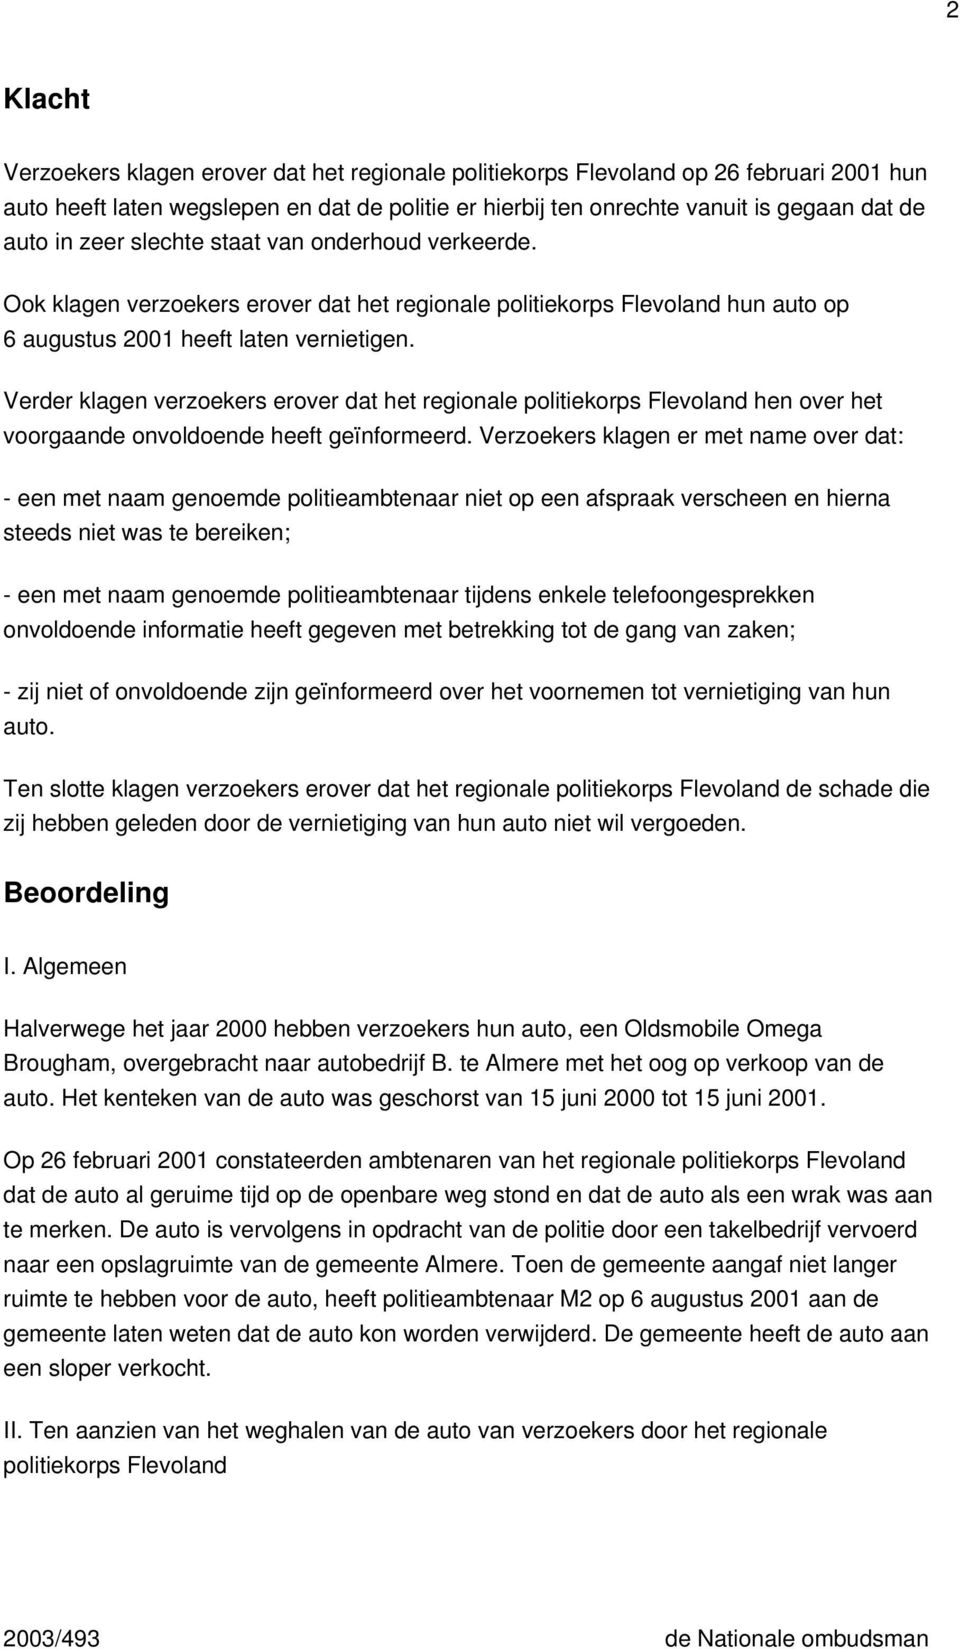 Verder klagen verzoekers erover dat het regionale politiekorps Flevoland hen over het voorgaande onvoldoende heeft geïnformeerd.